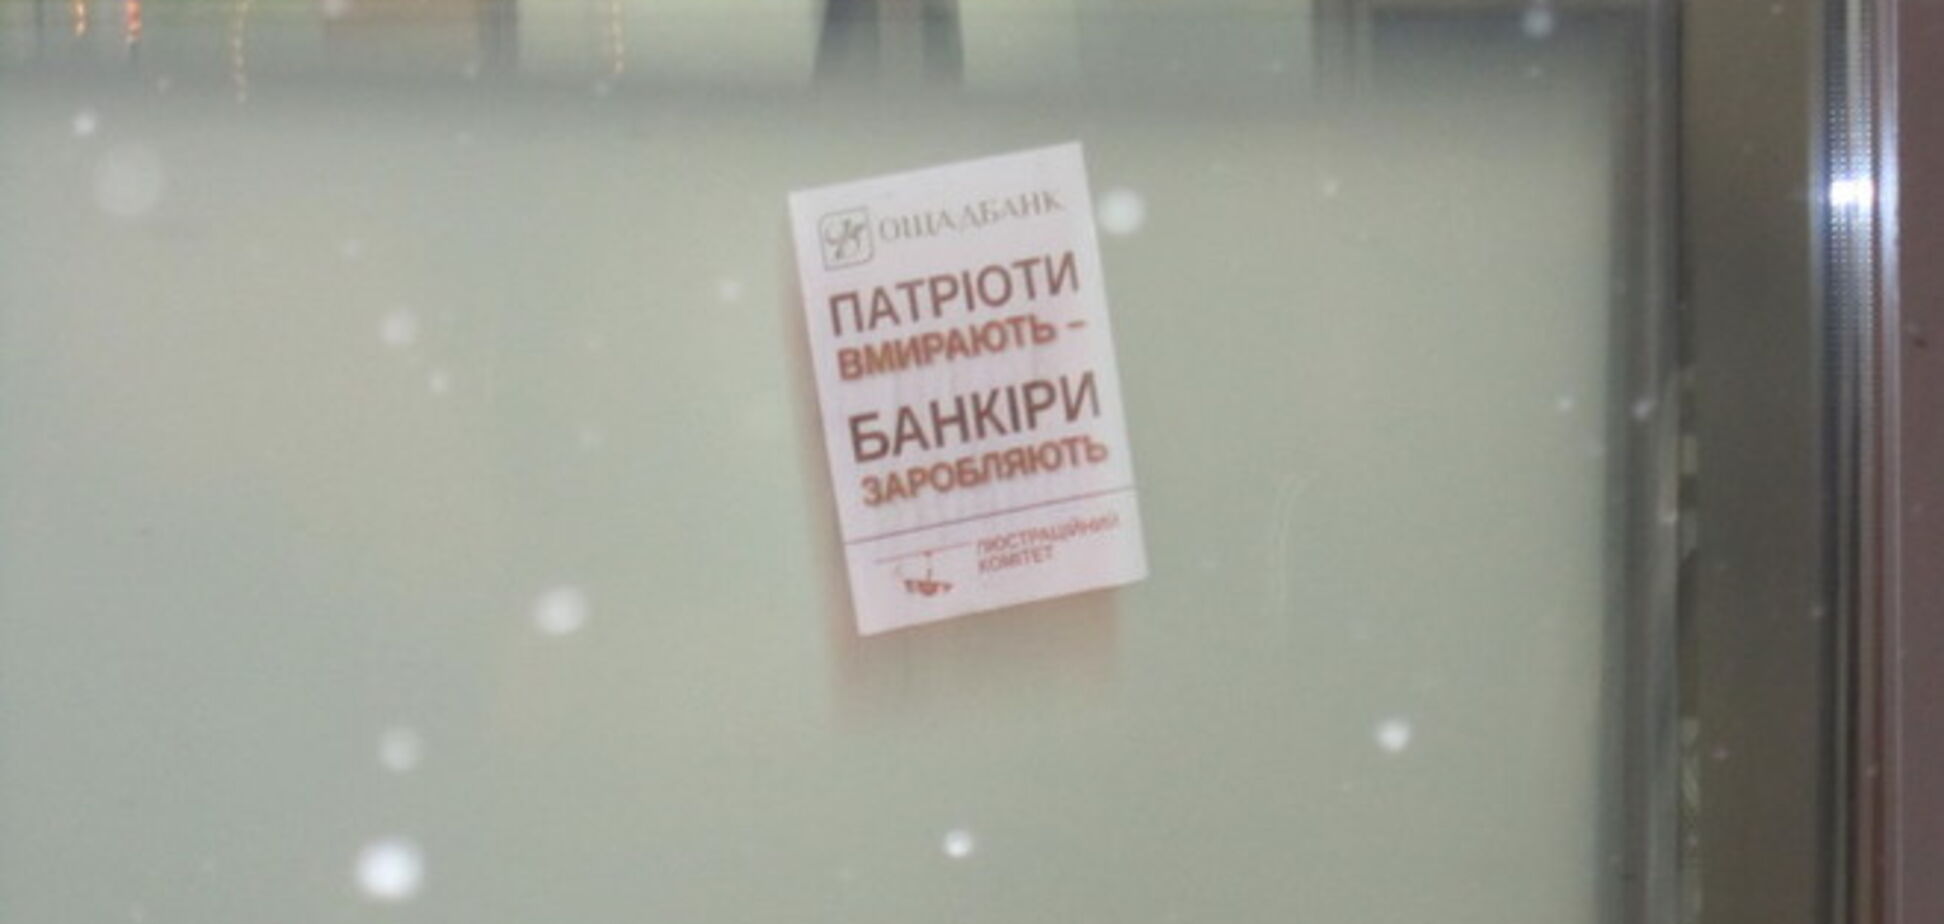 Банк друга Яценюка обклеили листовками 'Патриоты умирают - банкиры зарабатывают'